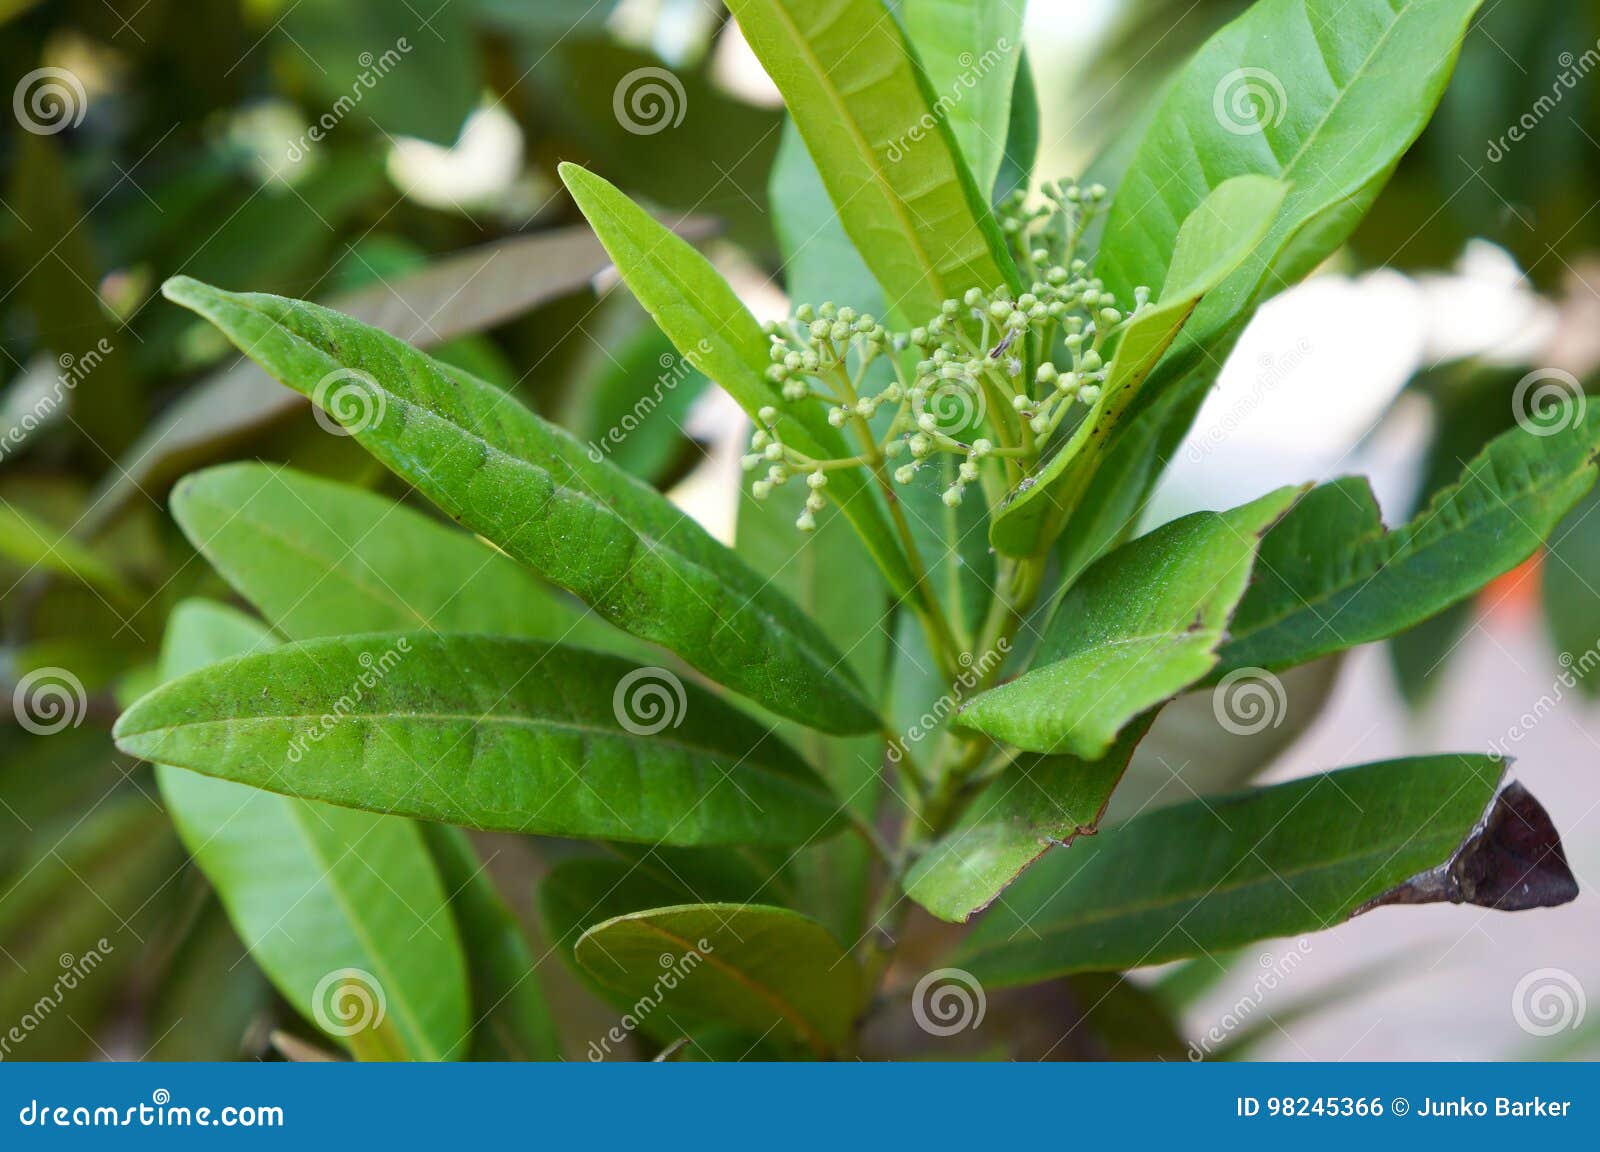 allspice tree, pimenta dioica